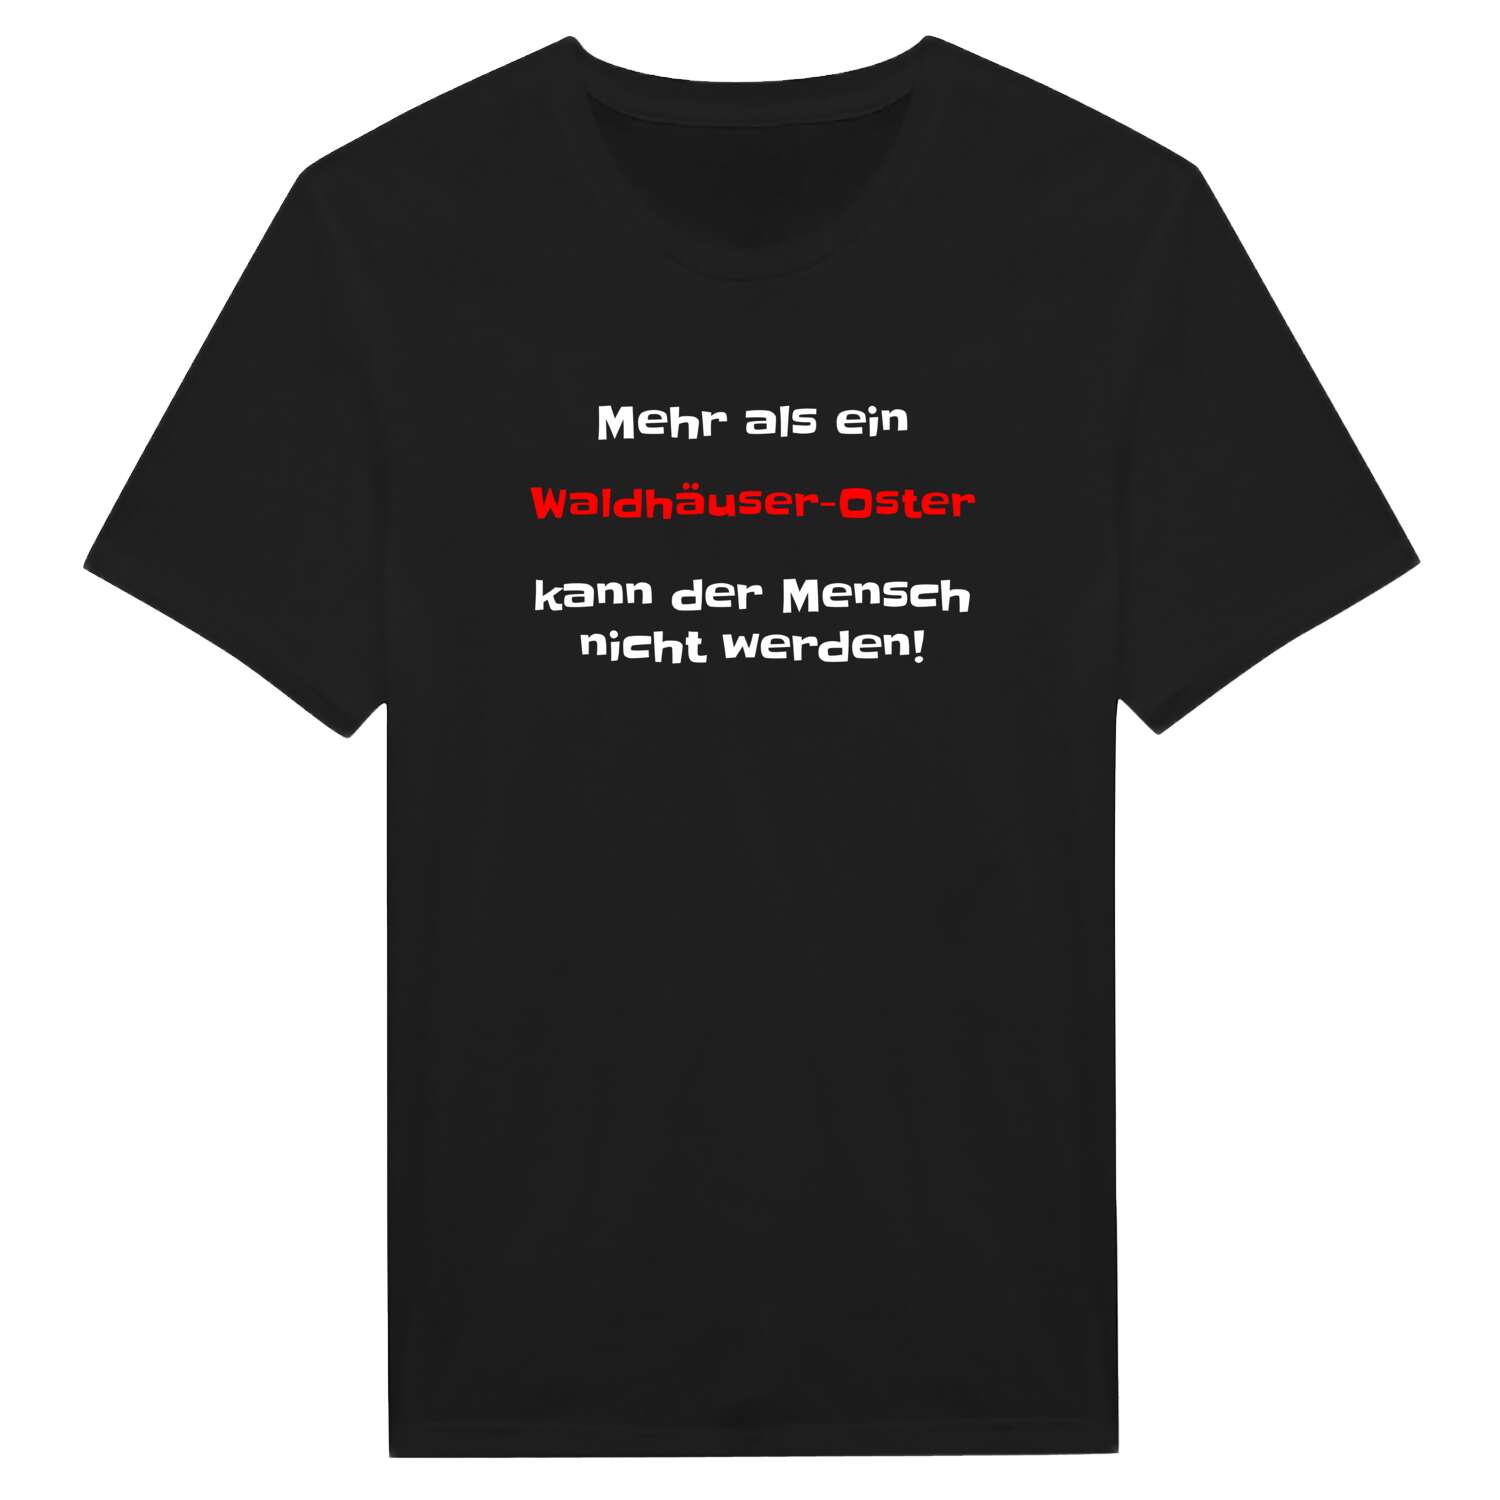 Waldhäuser-Ost T-Shirt »Mehr als ein«